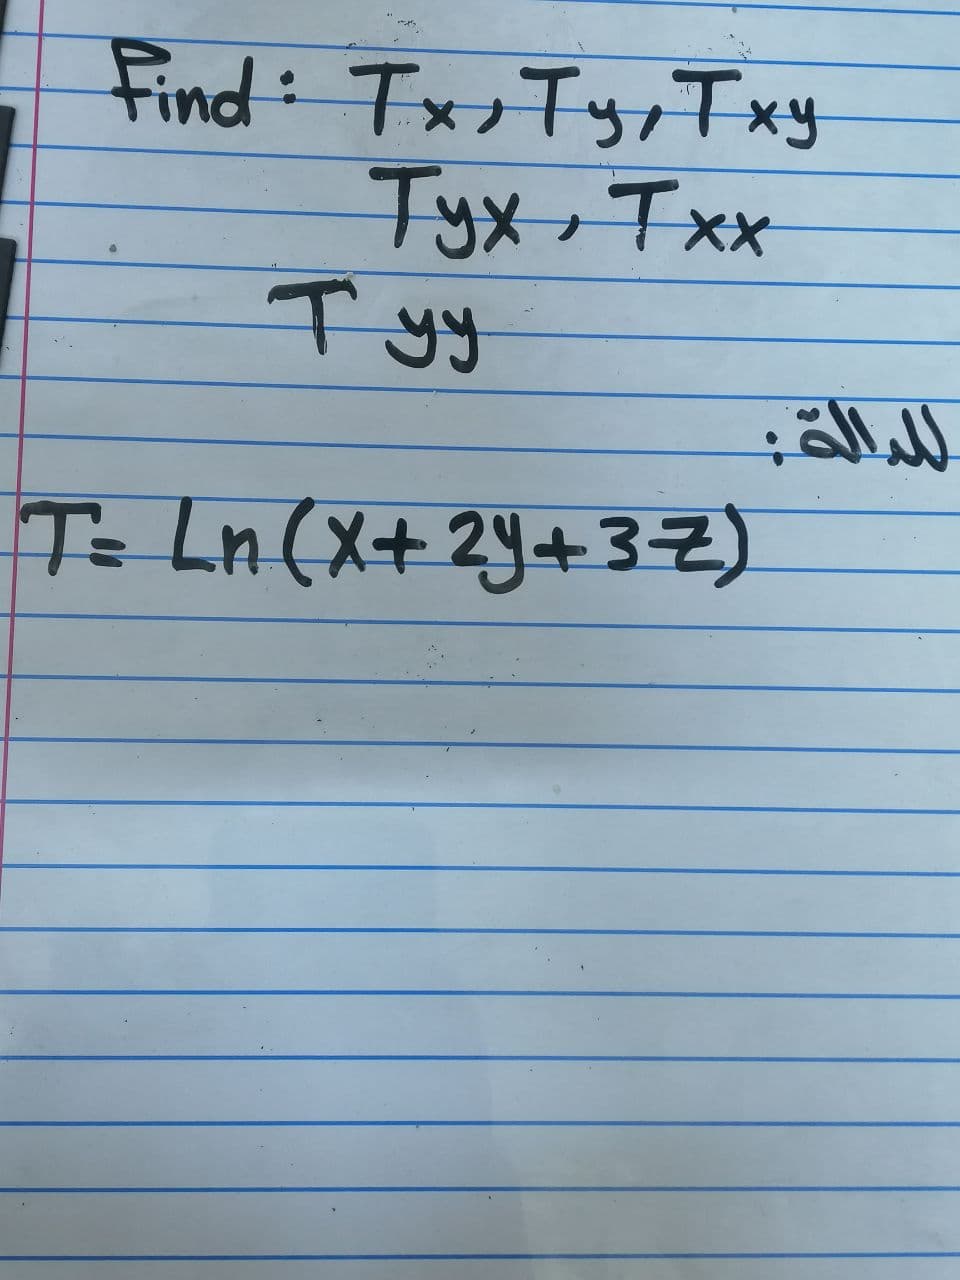 Find: Tx;Typ Txy
Tyx,Txx
Tyy
T- Ln (X+2Y+32)
